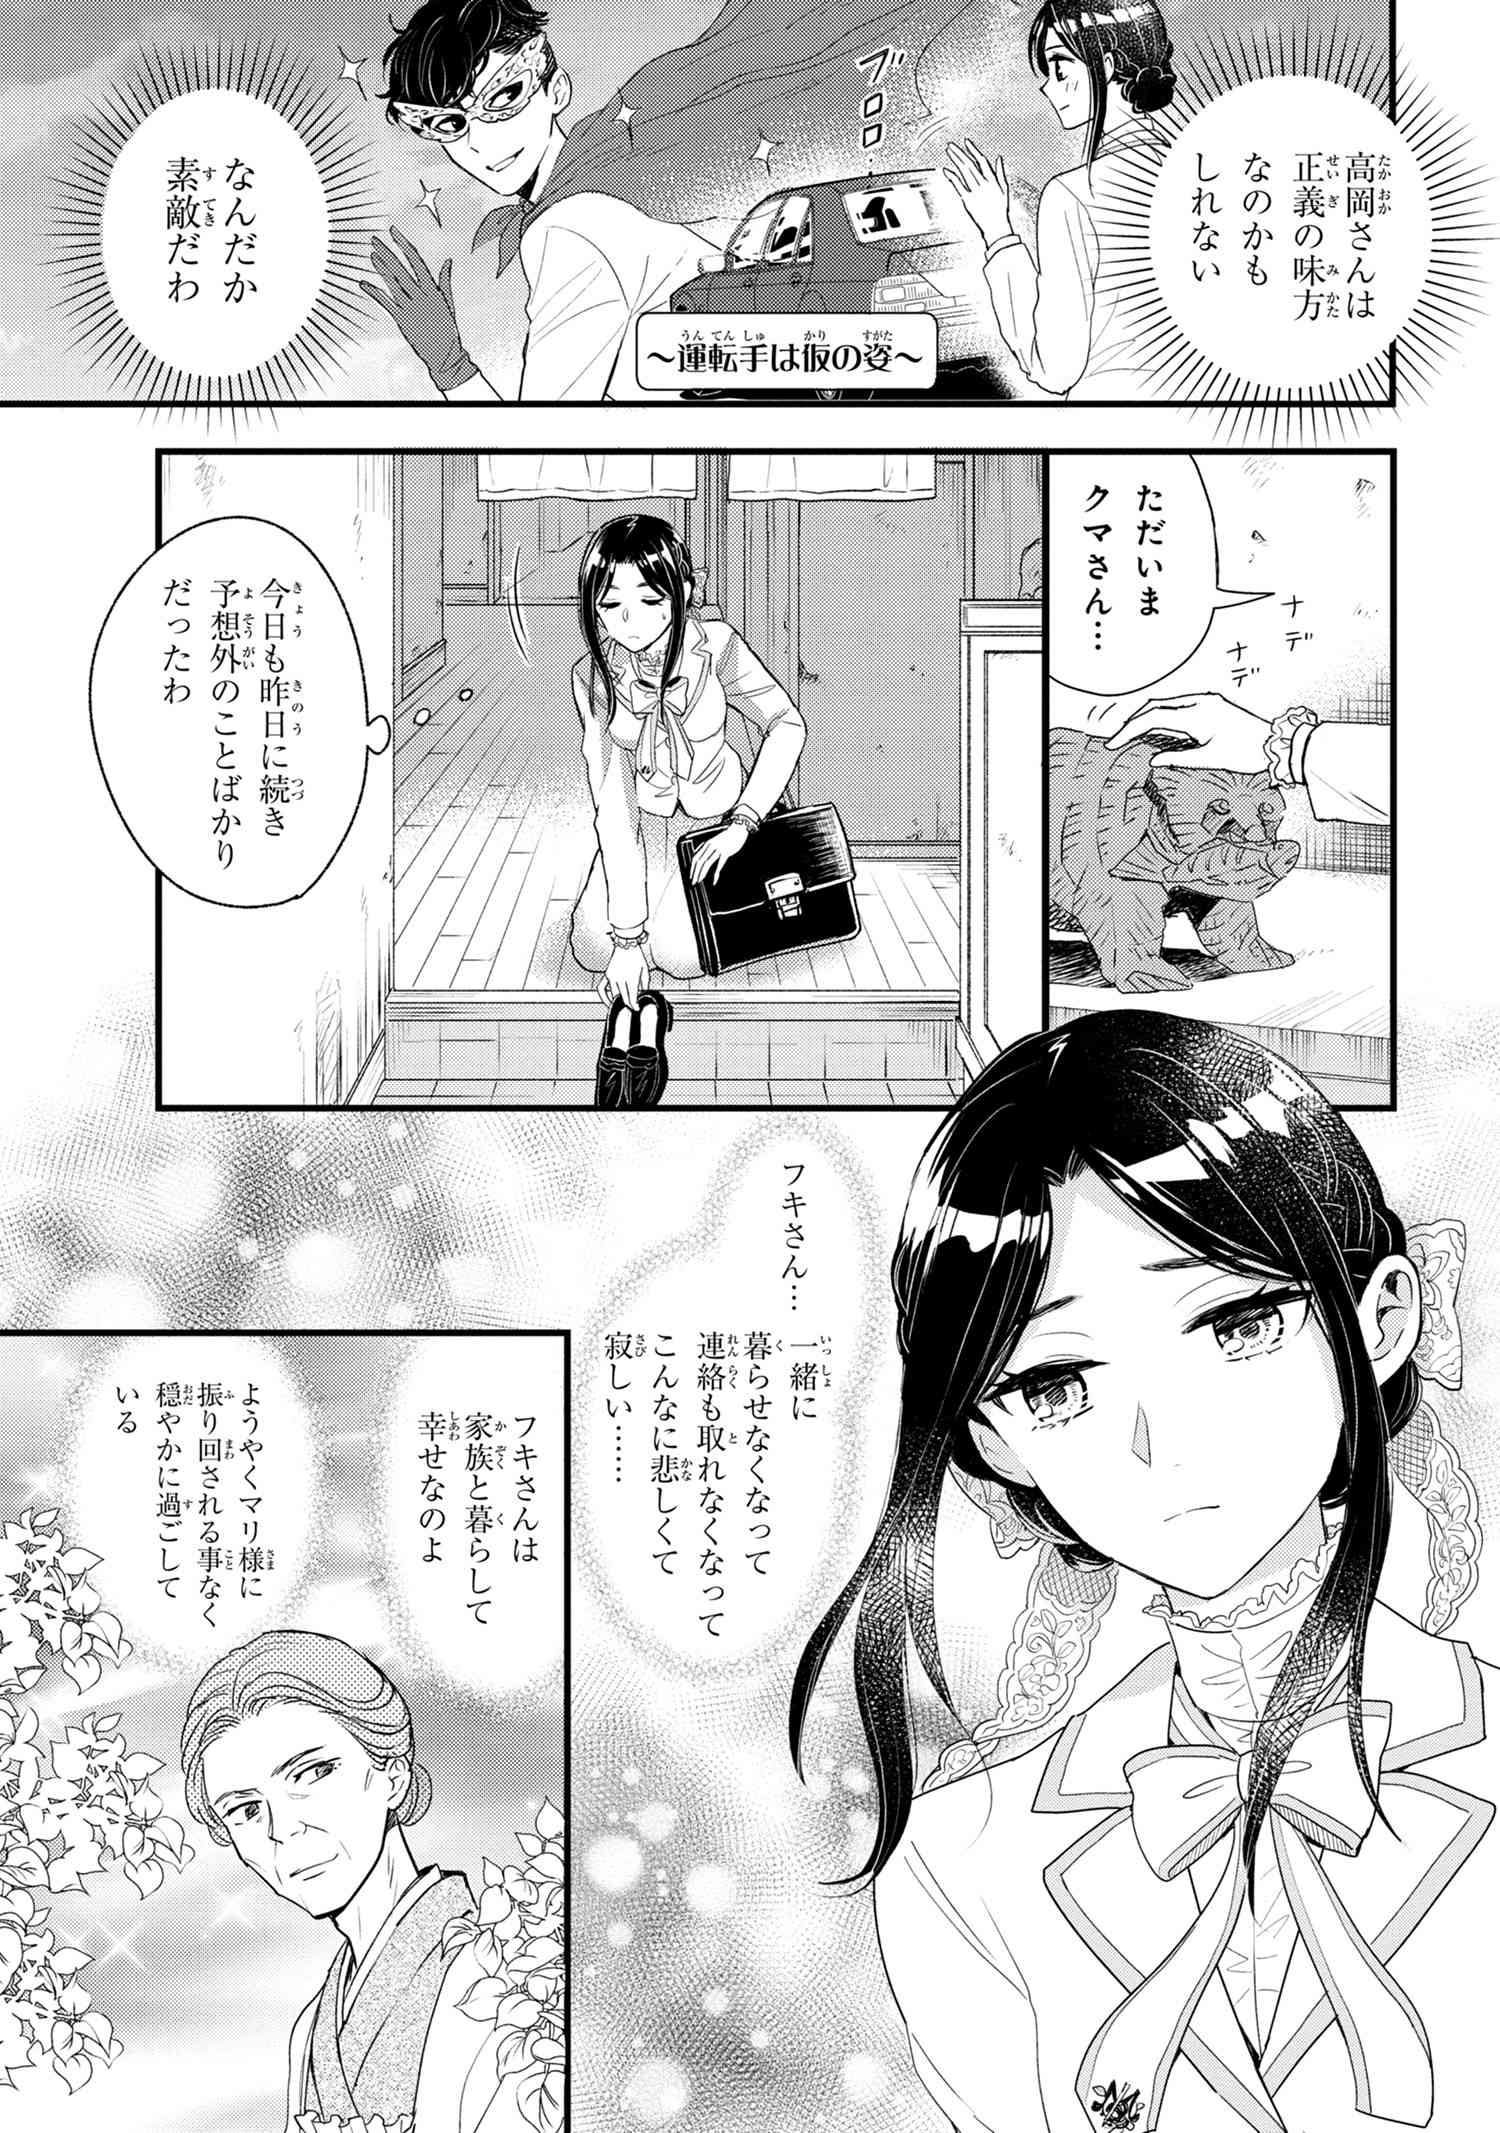 Reiko no Fuugi Akuyaku Reijou to Yobarete imasu ga, tada no Binbou Musume desu - Chapter 6-2 - Page 1